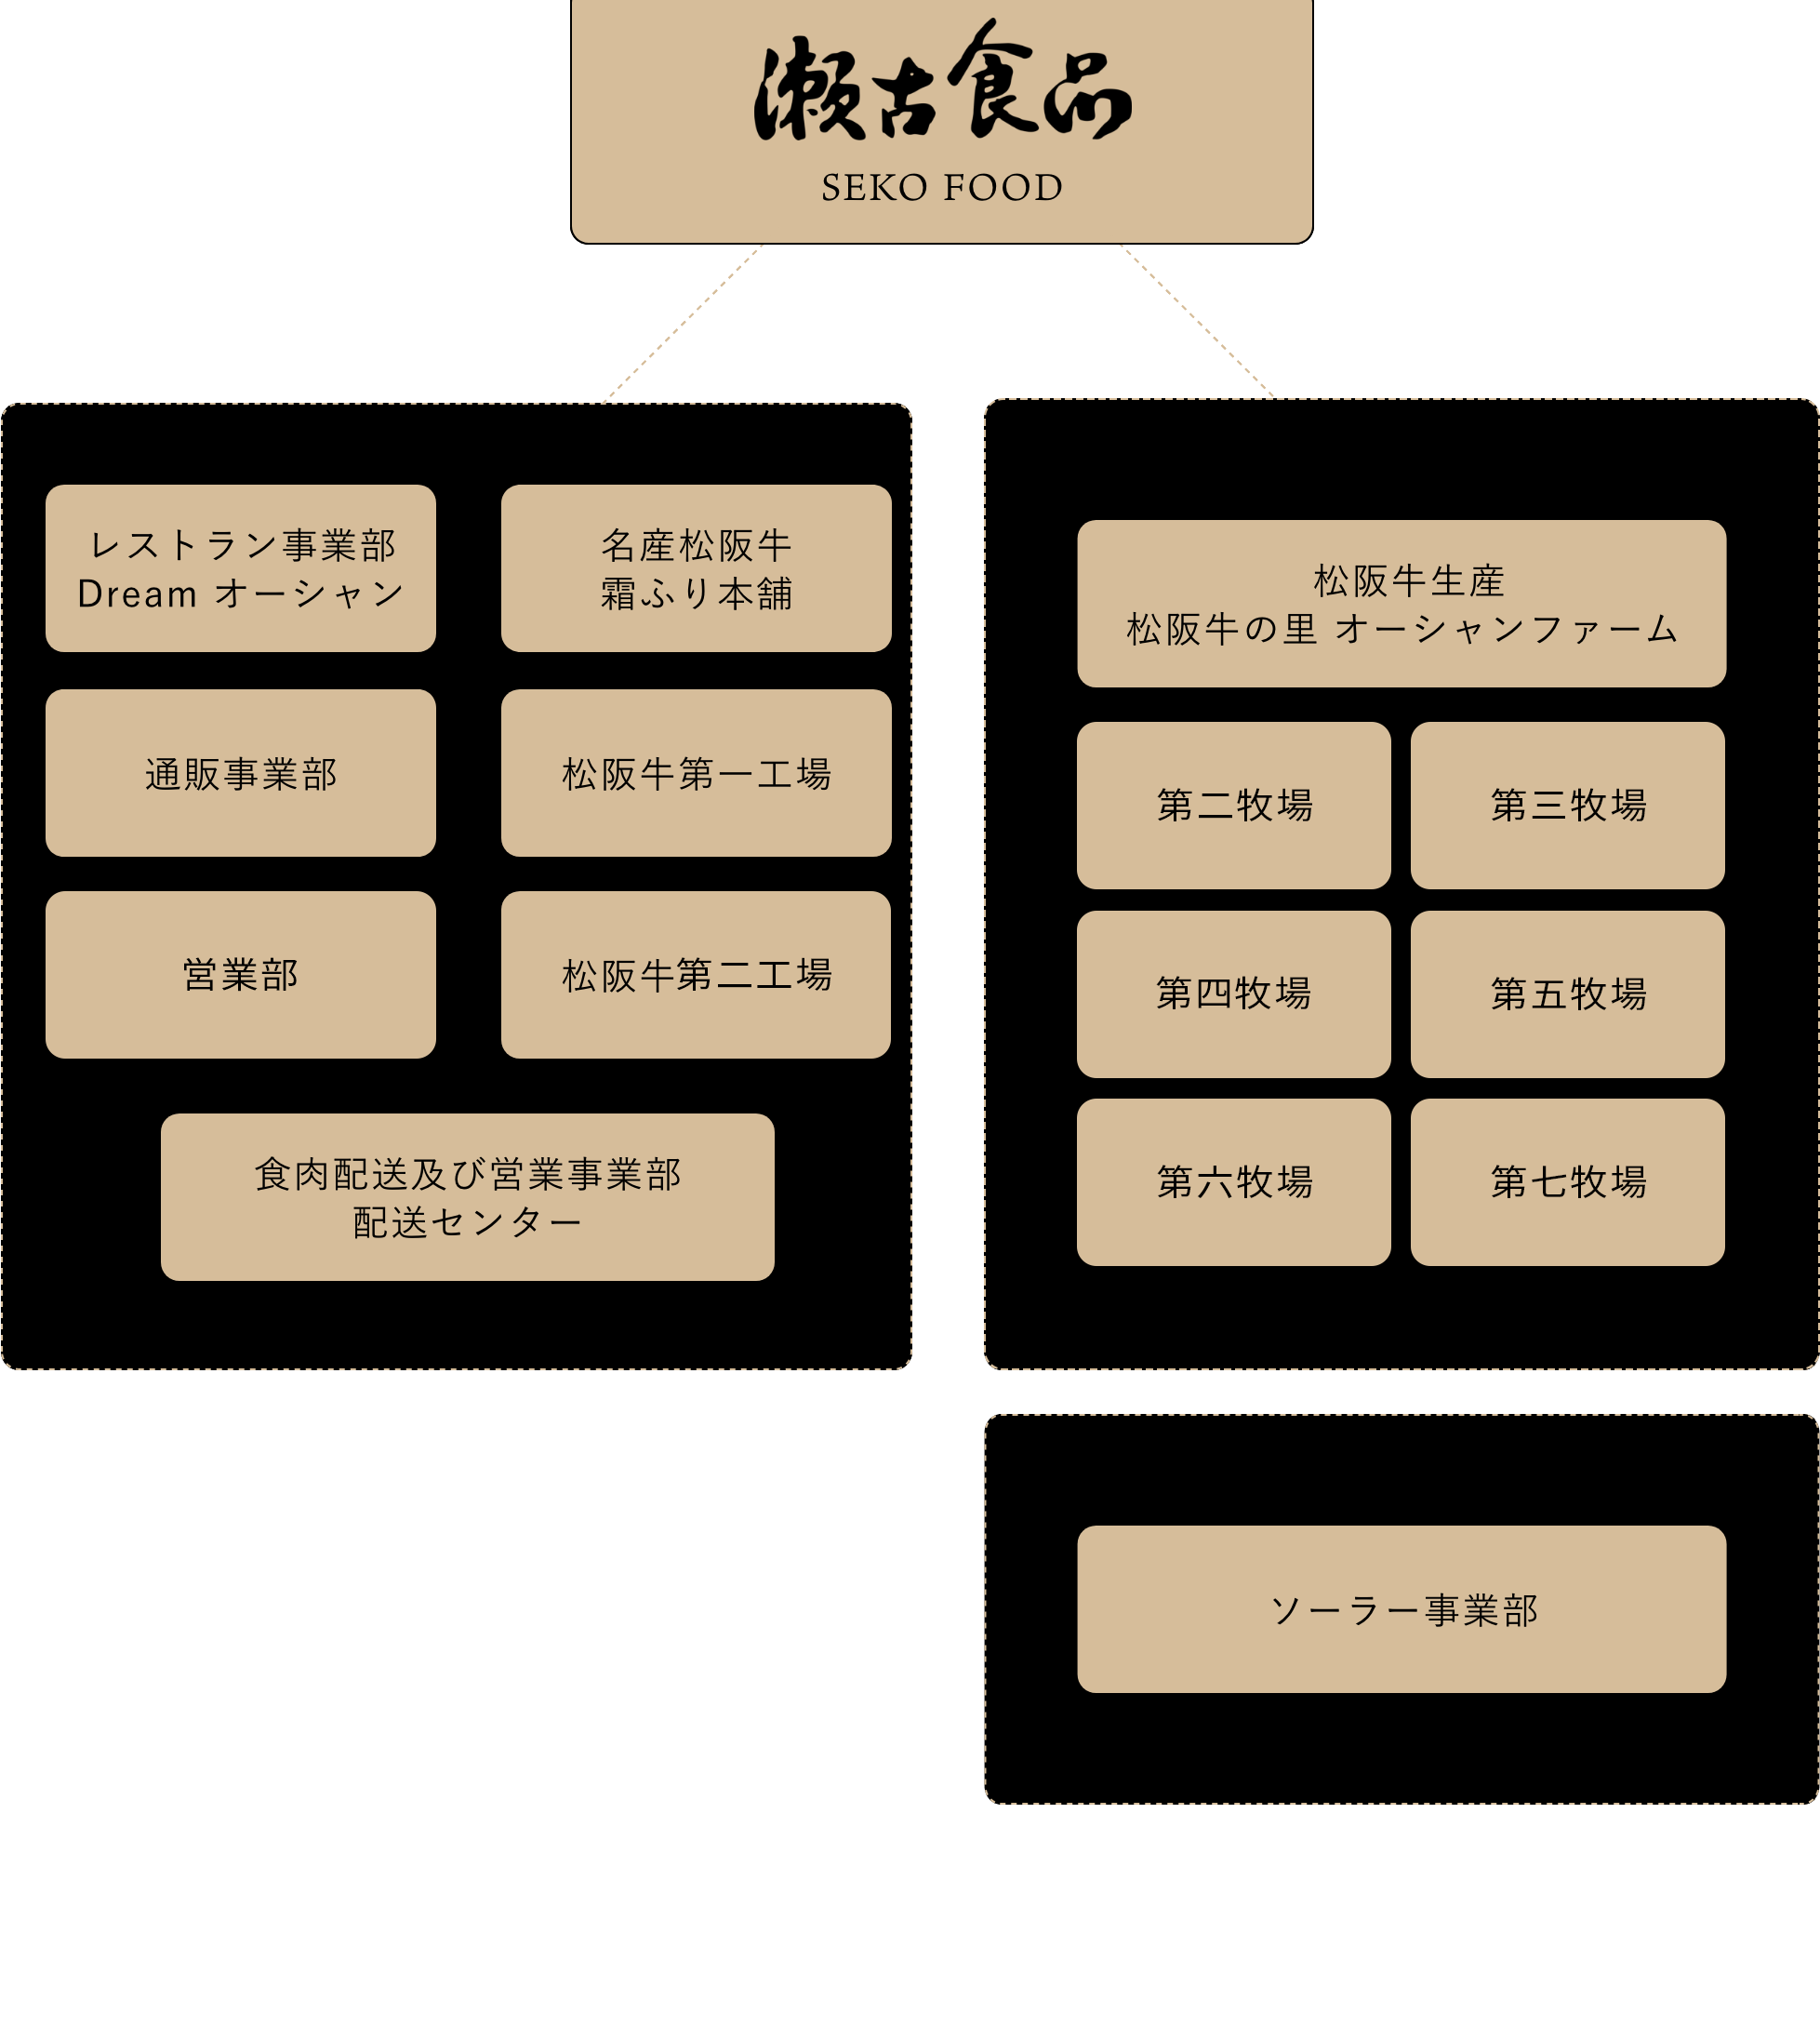 瀬古食品グループの組織図